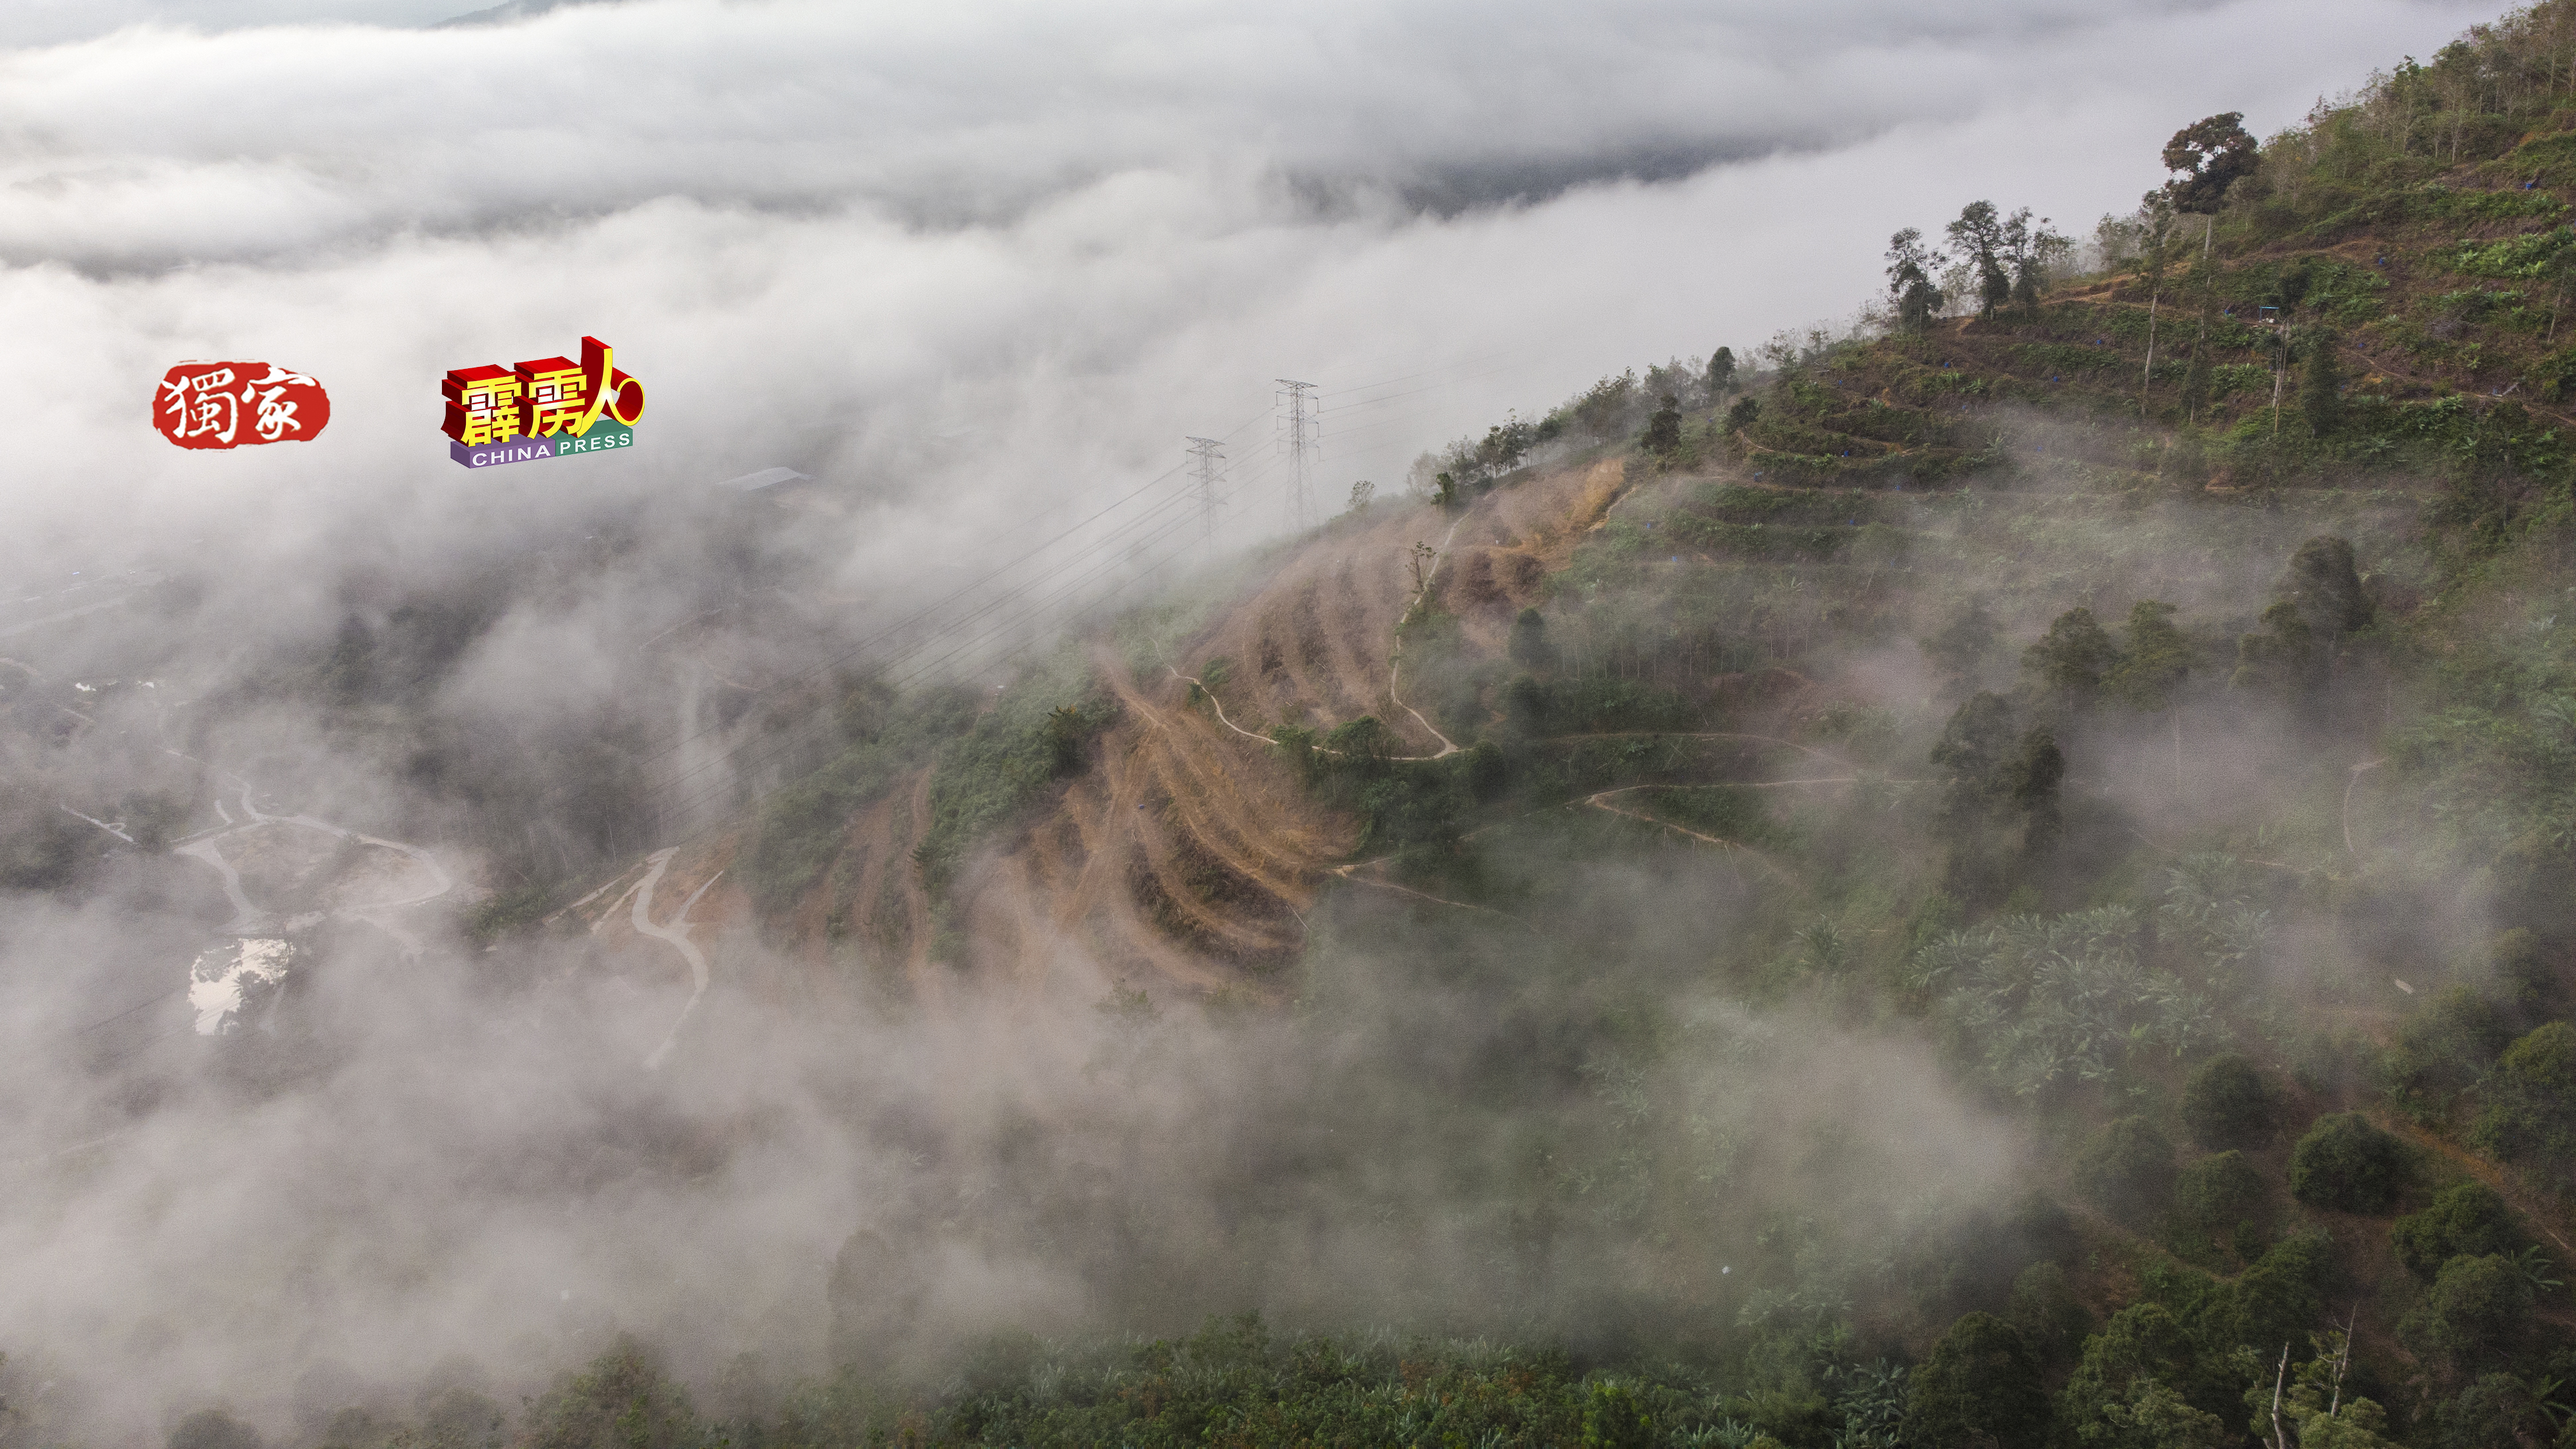 薄雾轻飘，环绕果园，这种唯美画面，随时有机会在利民加地山遇上。